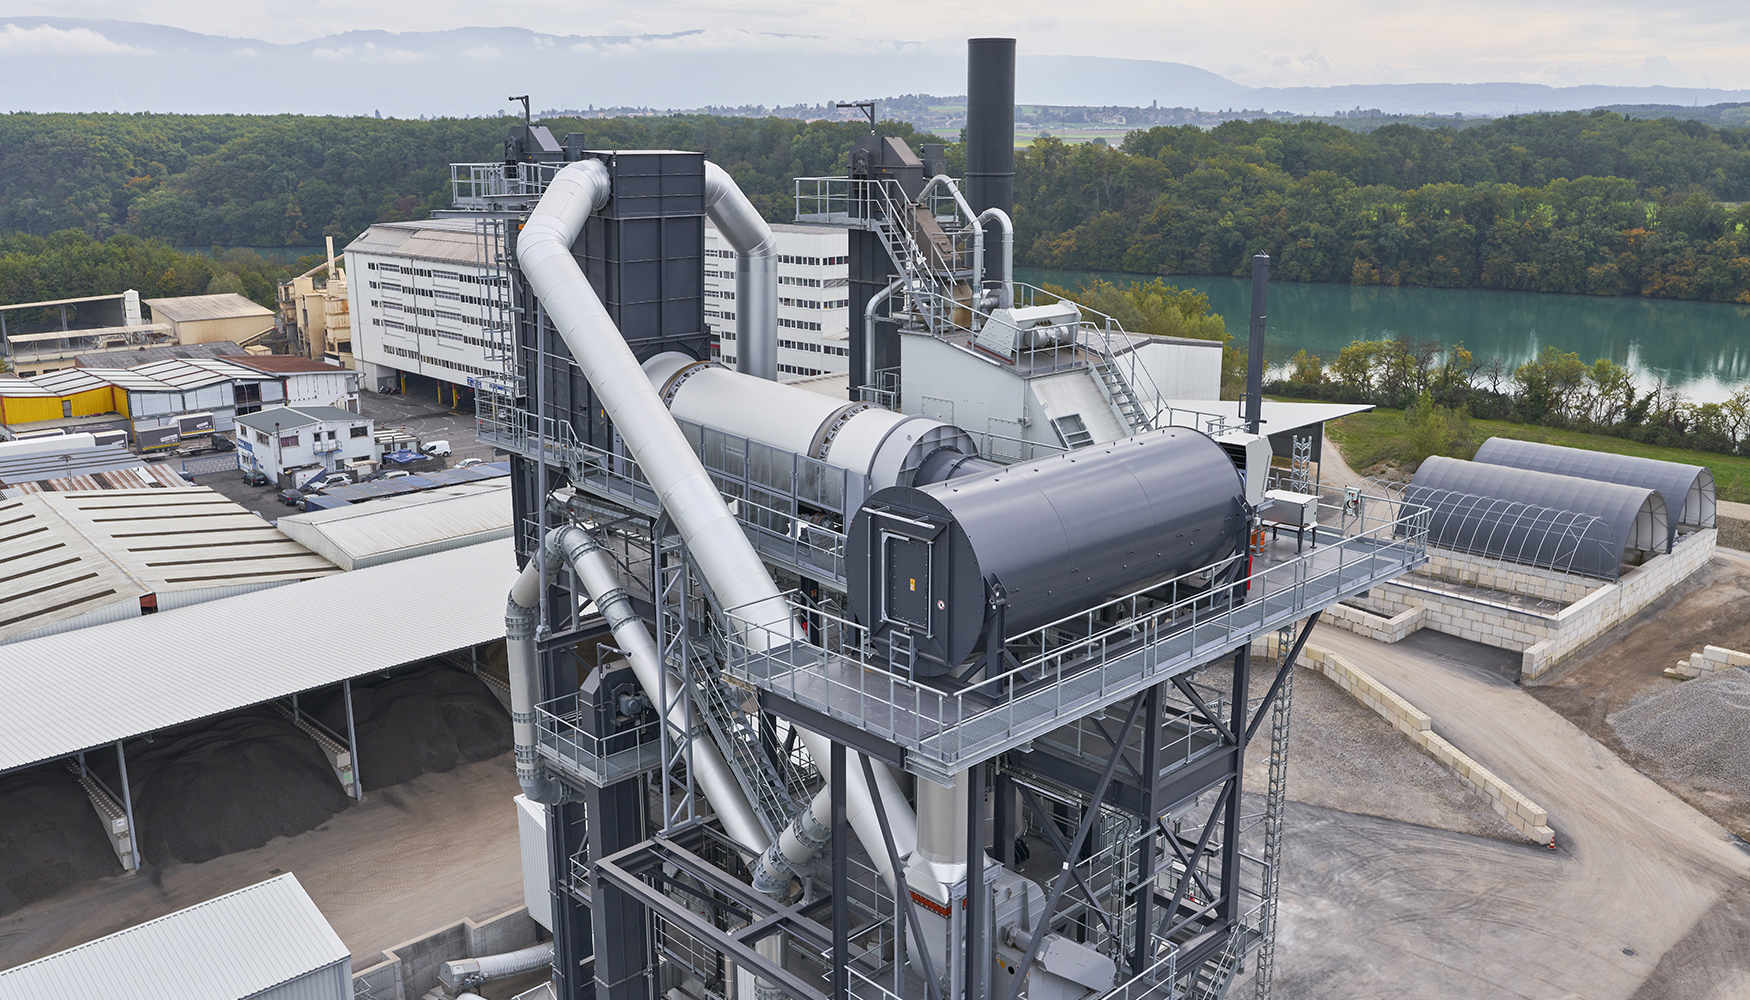 La tecnologa de generador de gas caliente de Benninghoven ofrece altas cuotas de reciclado en todos los niveles y volmenes de rendimiento...